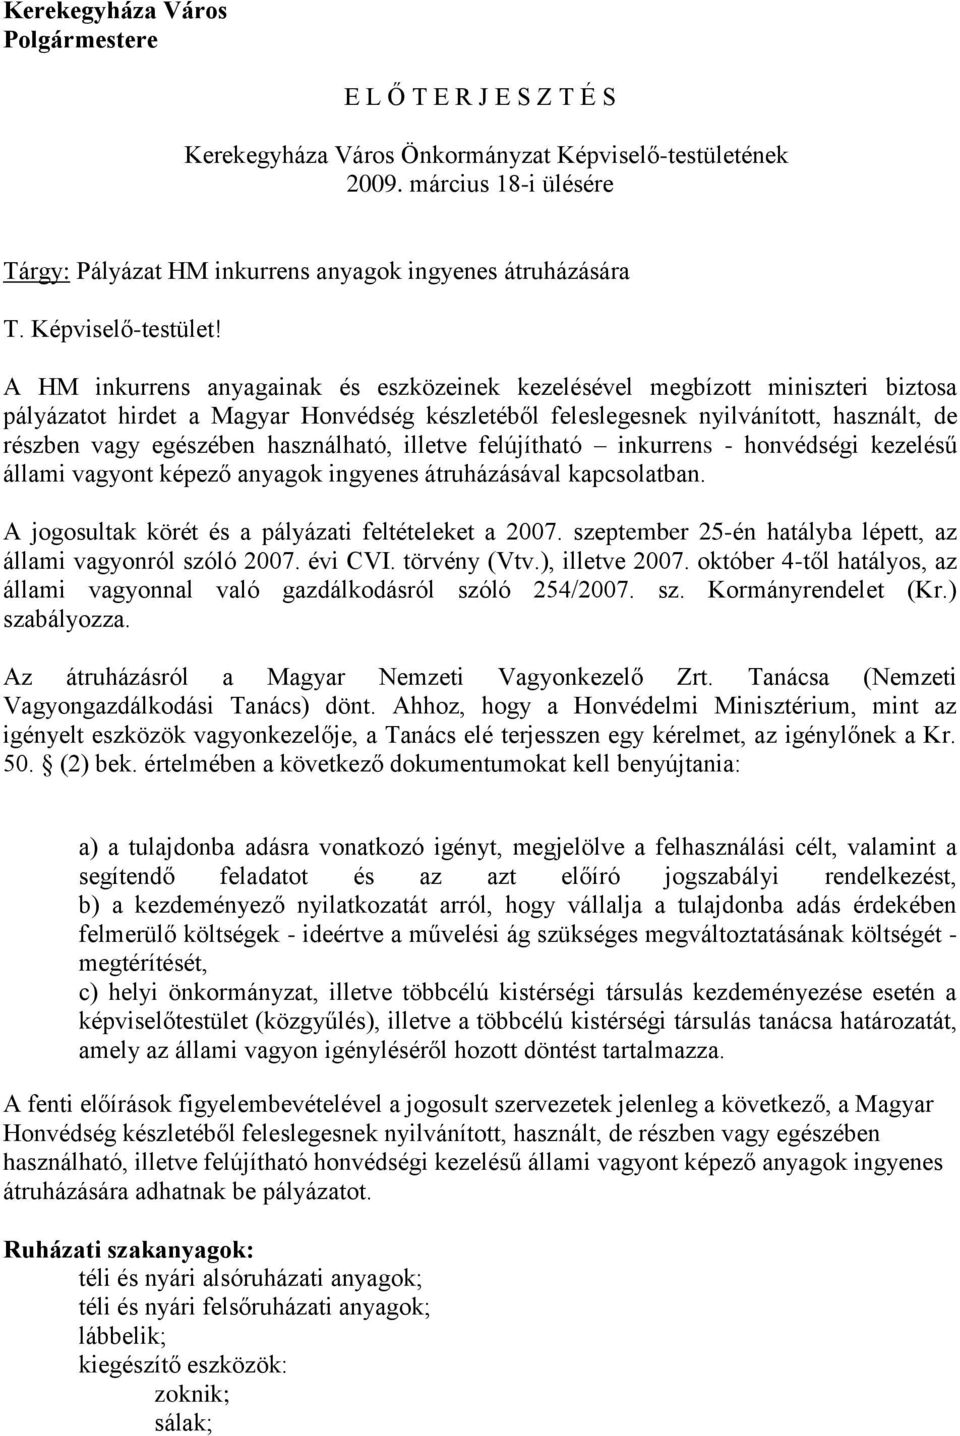 A HM inkurrens anyagainak és eszközeinek kezelésével megbízott miniszteri biztosa pályázatot hirdet a Magyar Honvédség készletéből feleslegesnek nyilvánított, használt, de részben vagy egészében